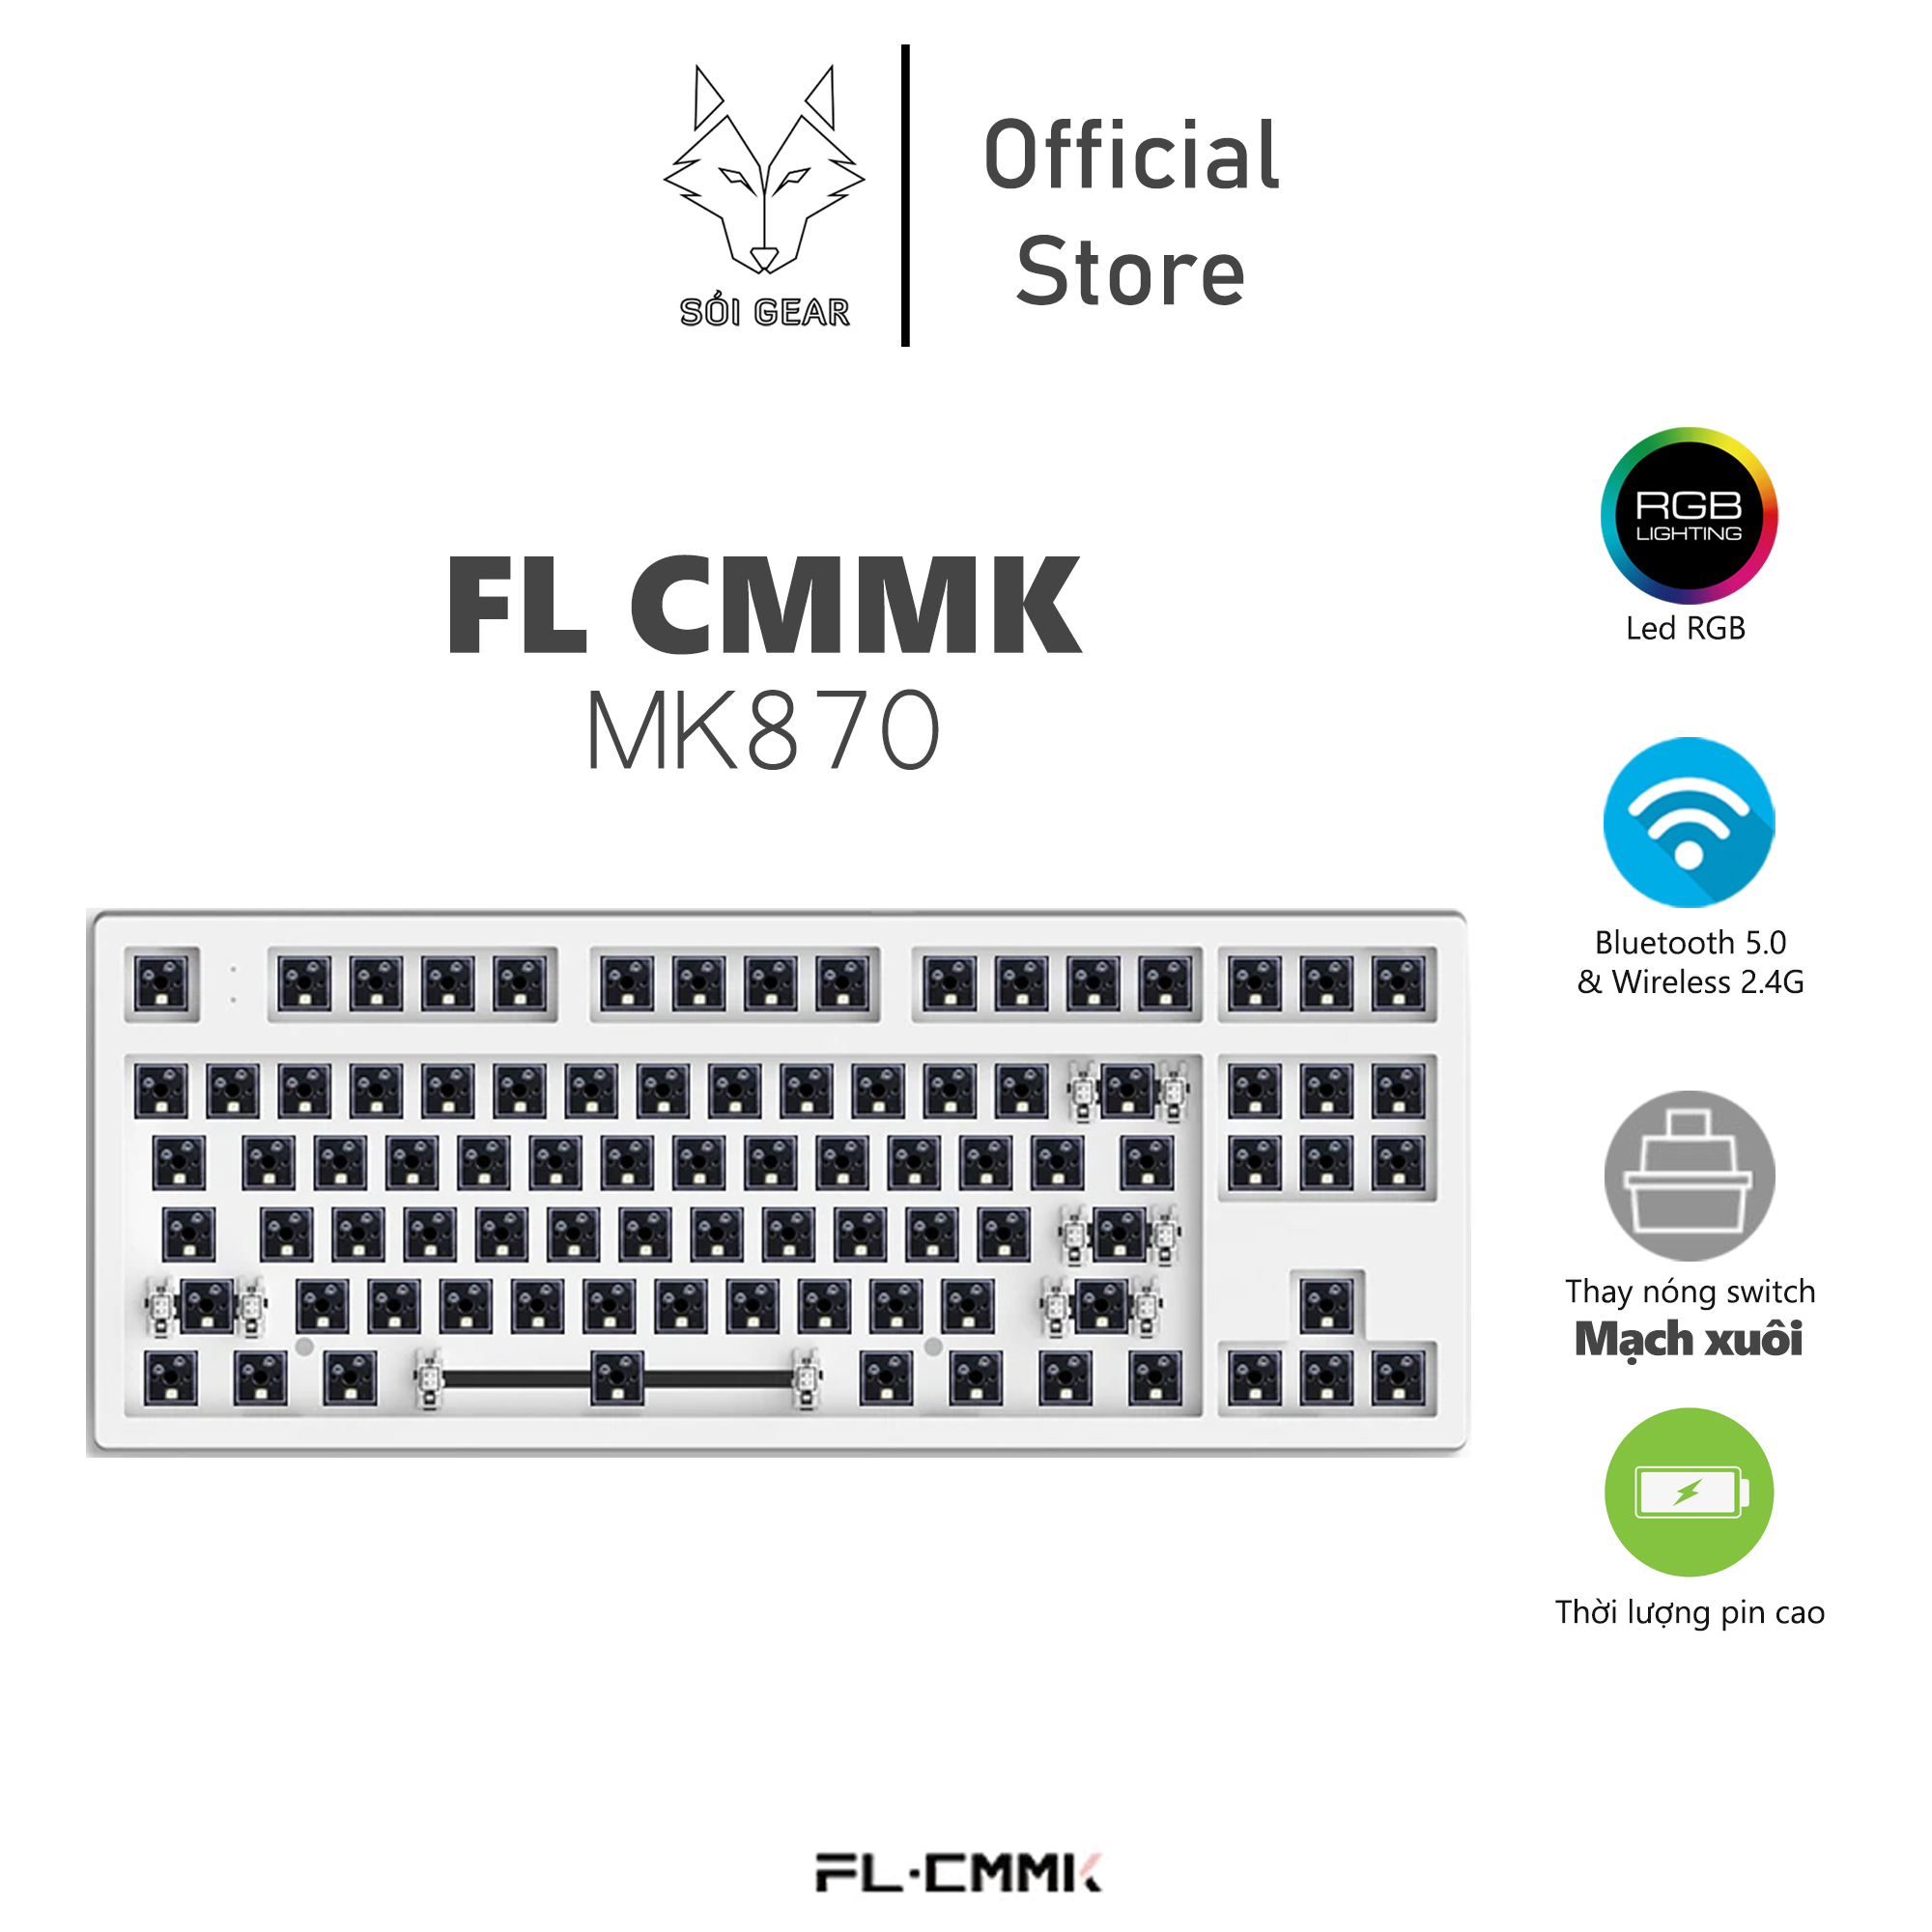 Bộ KIT bàn phím cơ FL- Esport MK870 Hotswap, RGB, Mạch xuôi, 3 Modes, có sẵn foam, bảo hành chính hãng 12 tháng